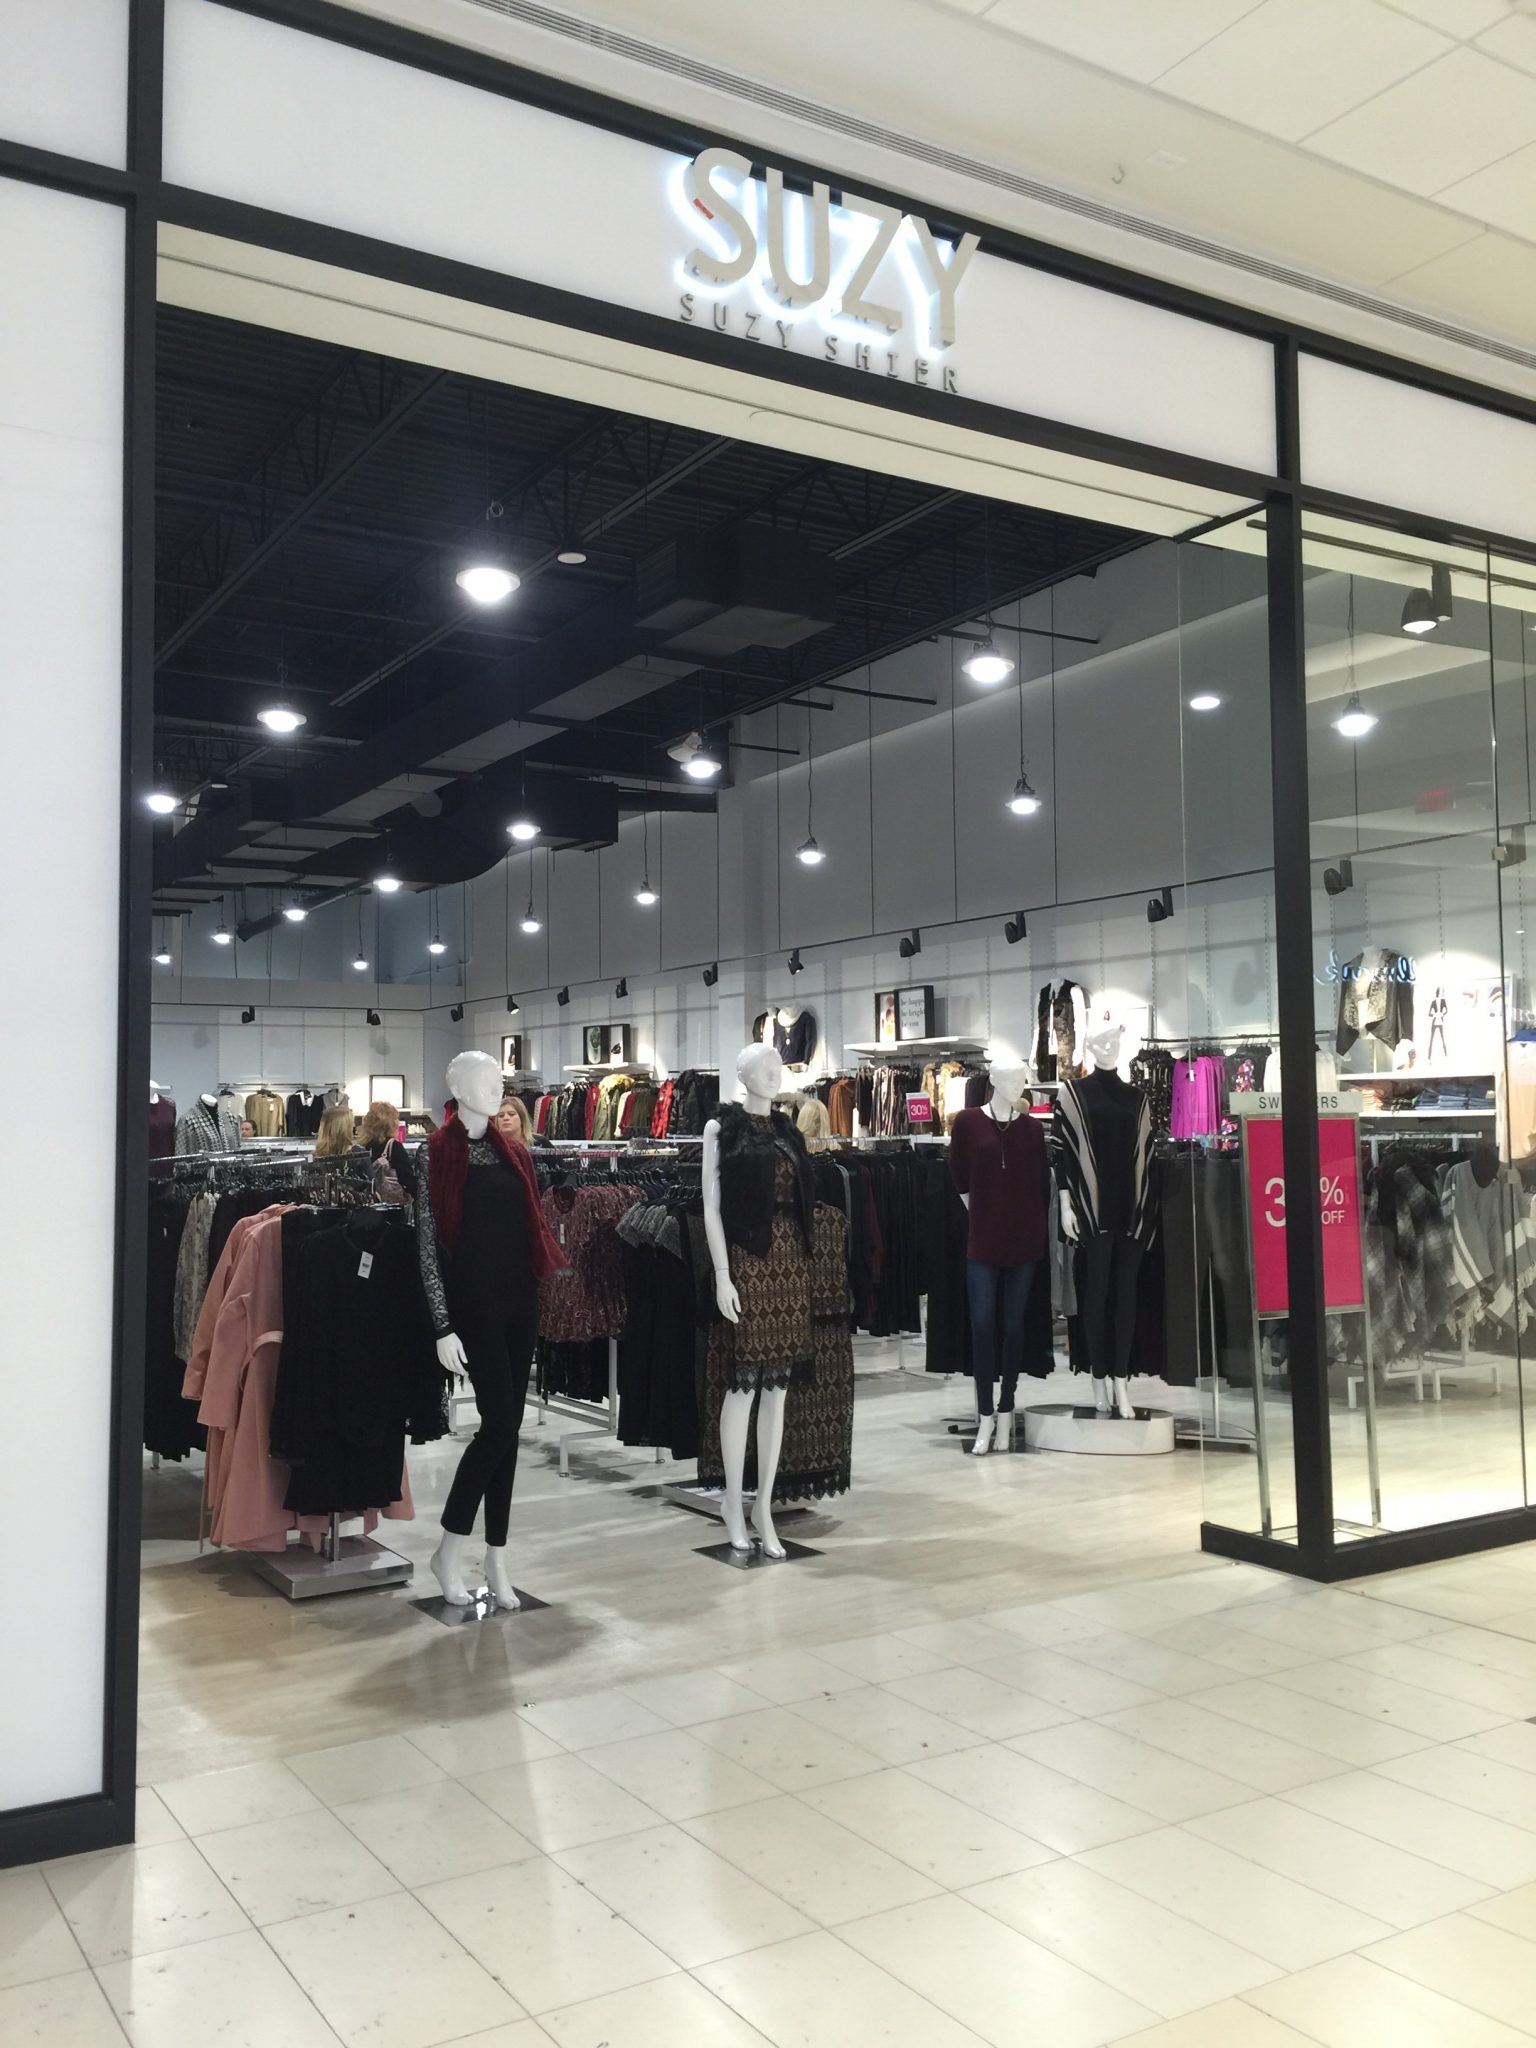 Suzy Shier Store Oshawa Centre